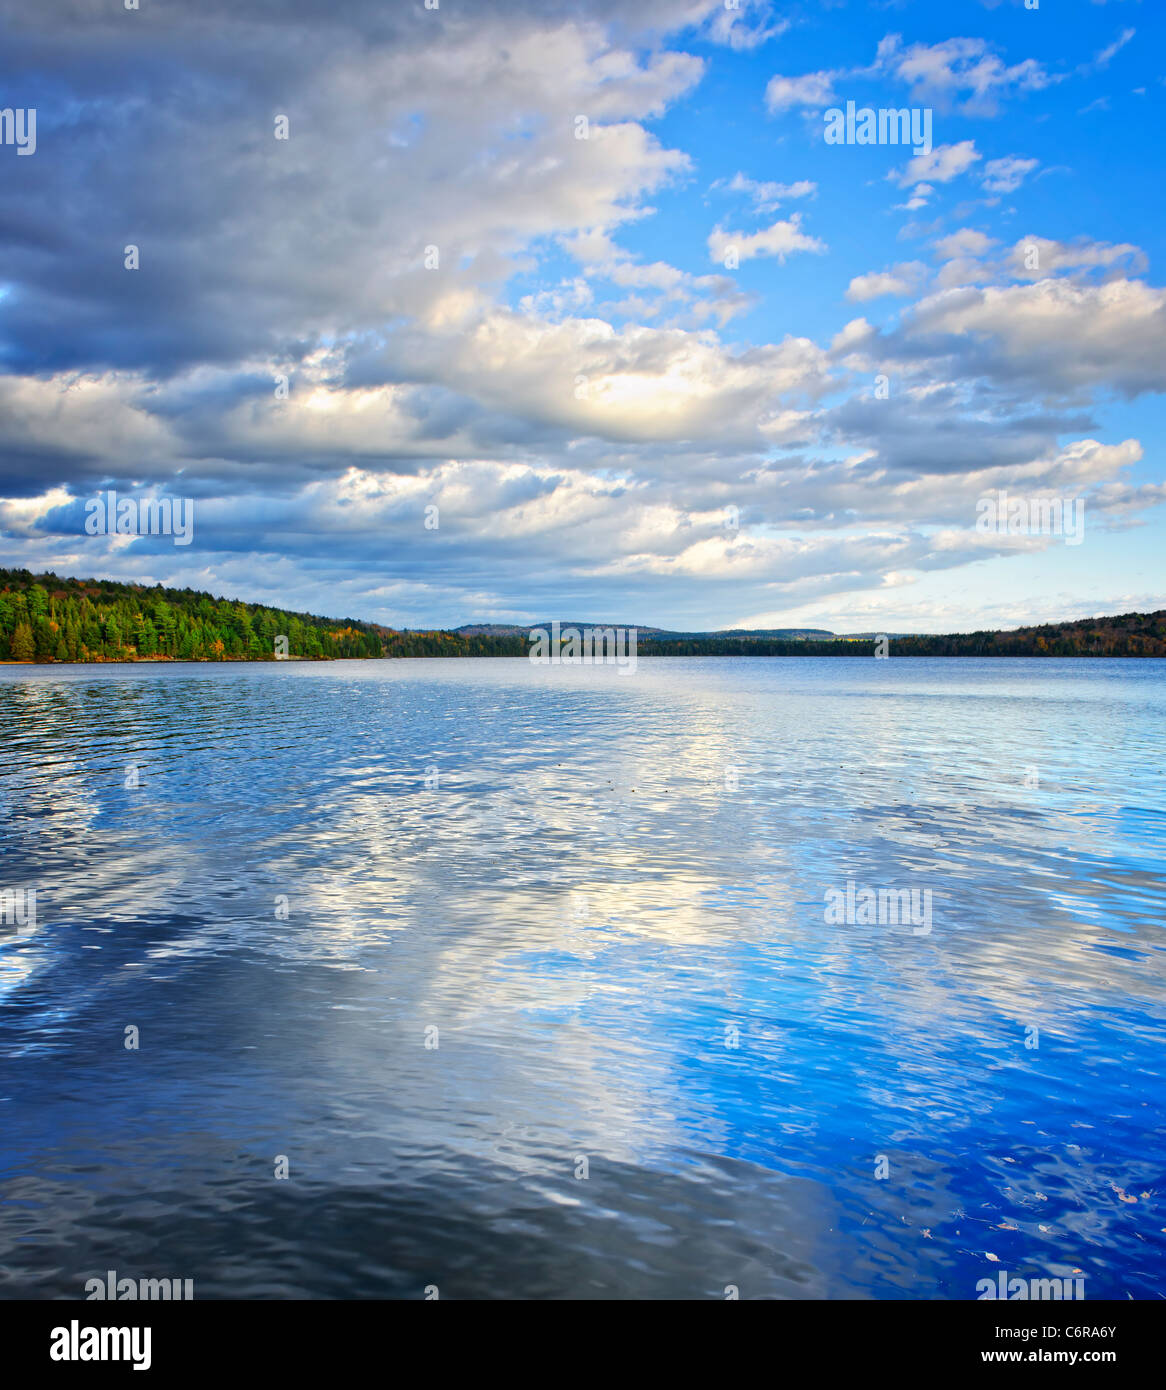 Lac de deux rivières en raison de ciel bleu et nuages dans le parc Algonquin, Canada Banque D'Images